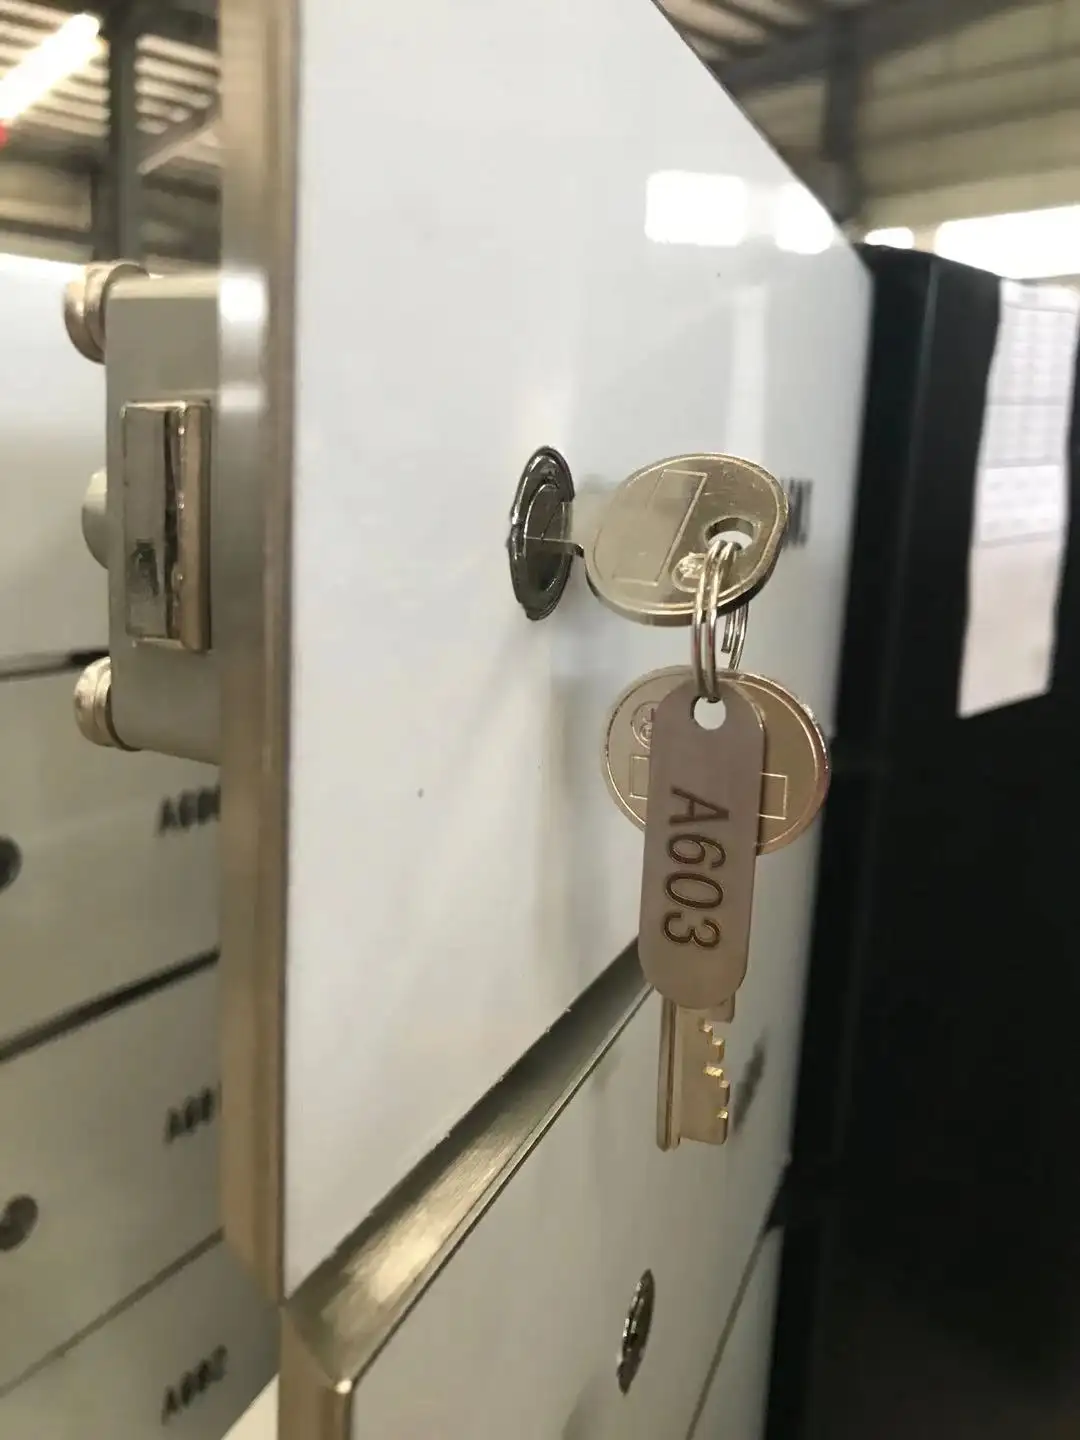 दोहरी चाबी ताला धातु स्टील सुरक्षित जमा बॉक्स ताला JZ-02 ग्राहक कुंजी और गार्ड चाबियाँ के साथ प्रमाणित सुरक्षा ताला